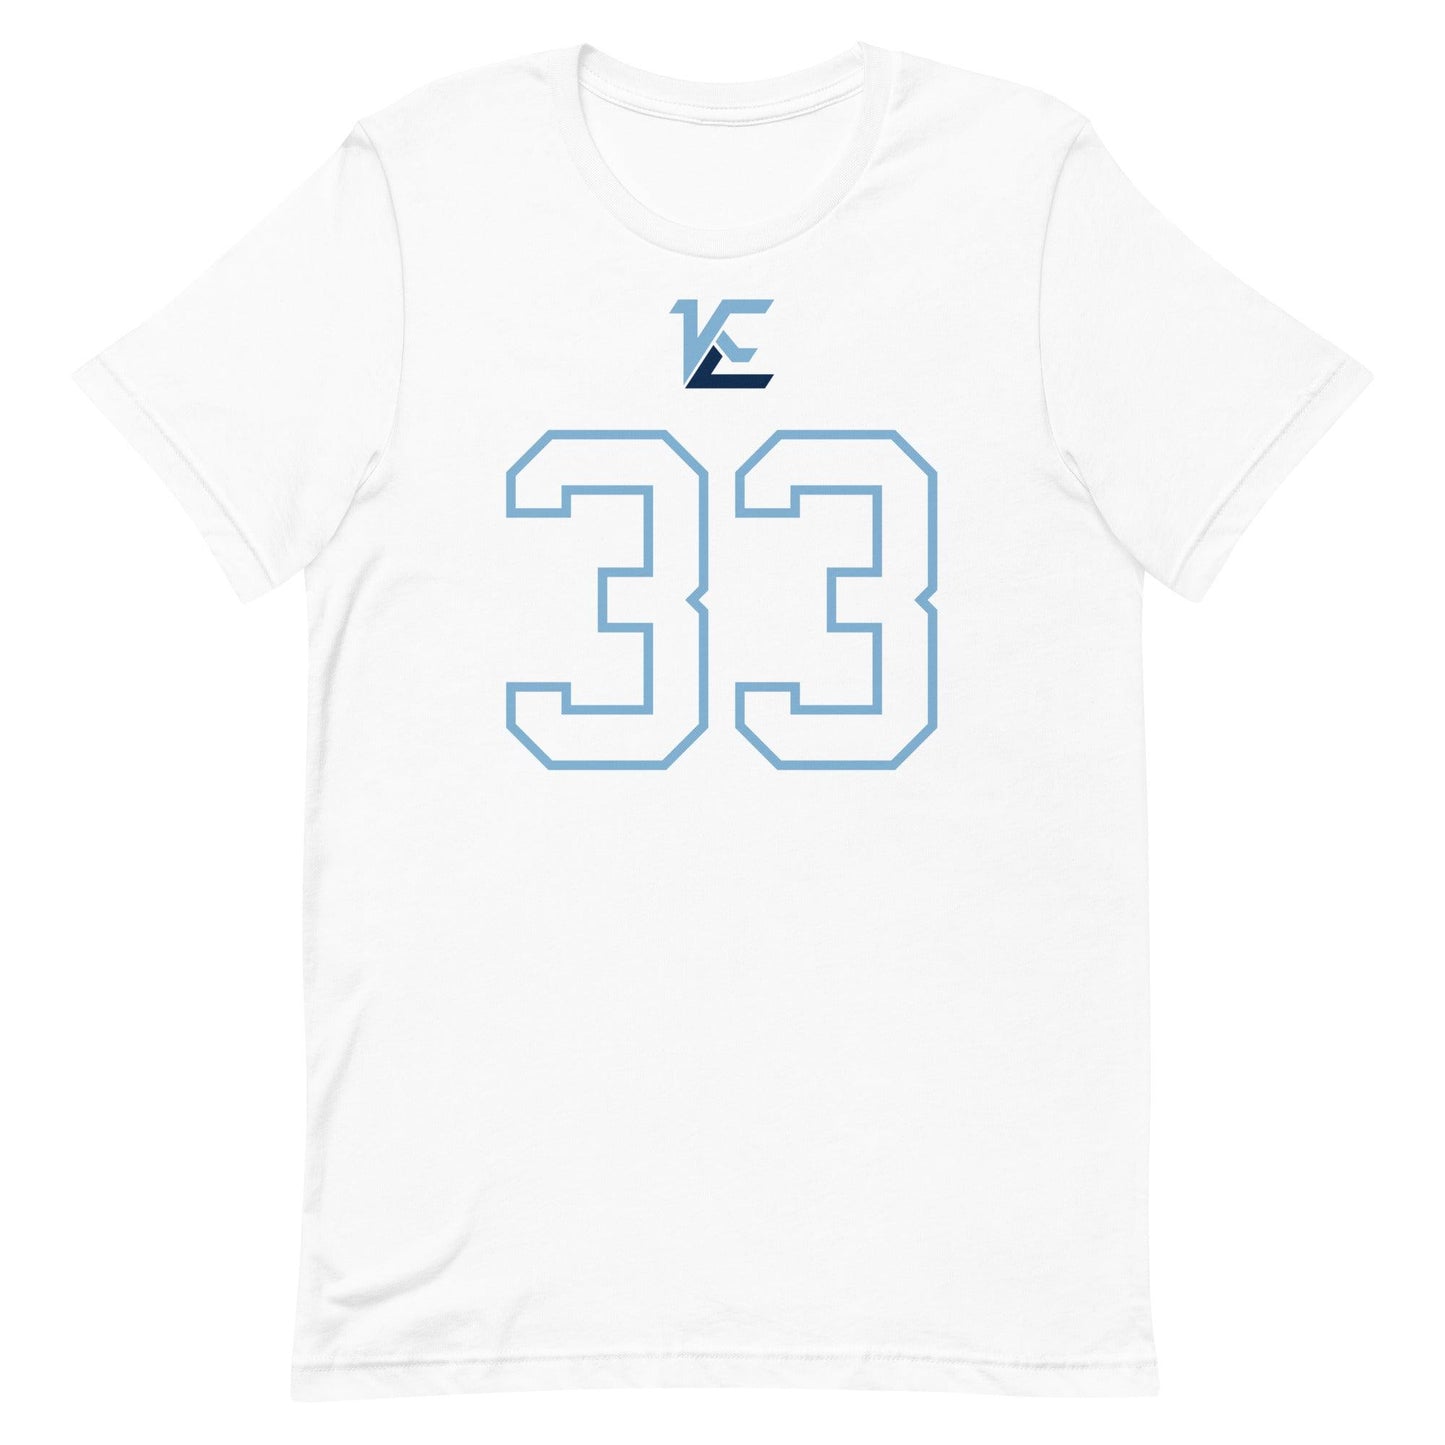 Kamarro Edmonds "Jersey" t-shirt - Fan Arch